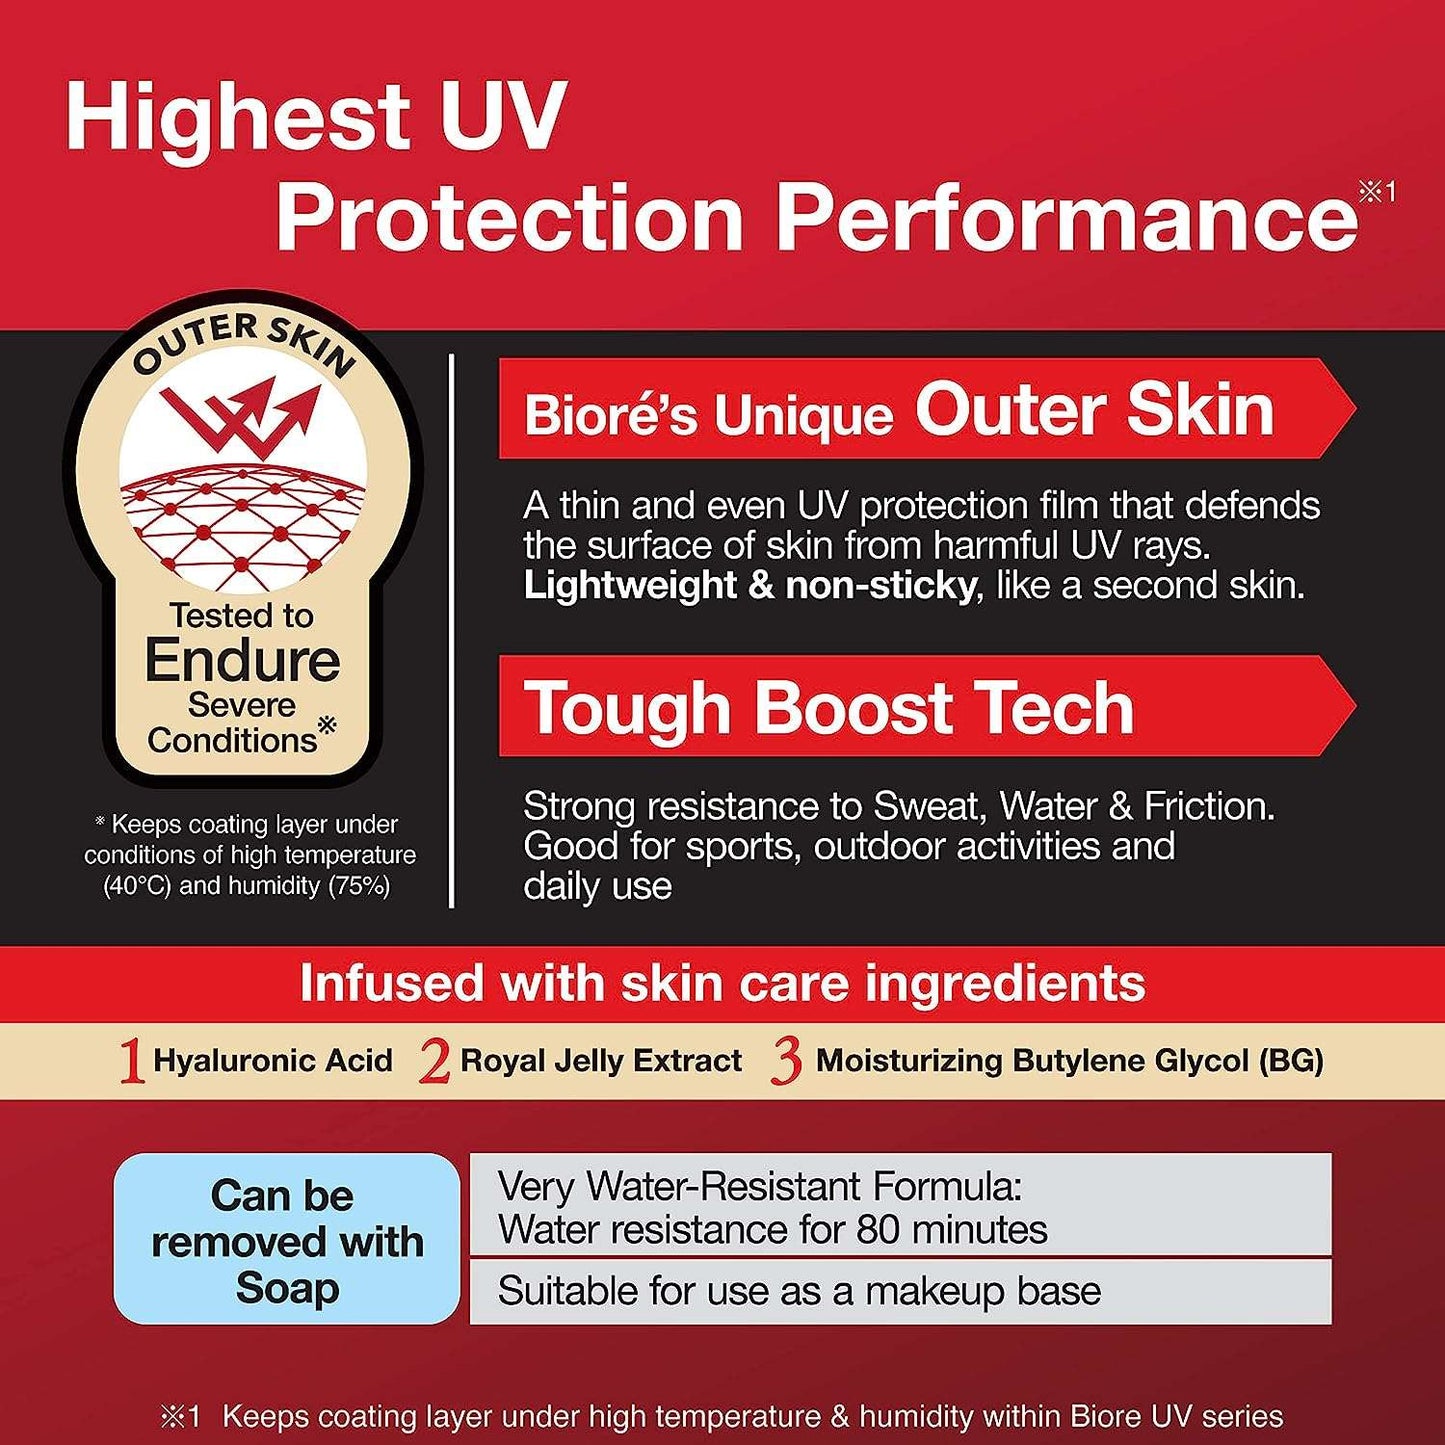 Biore UV Athlizm Skin Protect Essence Sunscreen 70g SPF 50 + / PA ++++